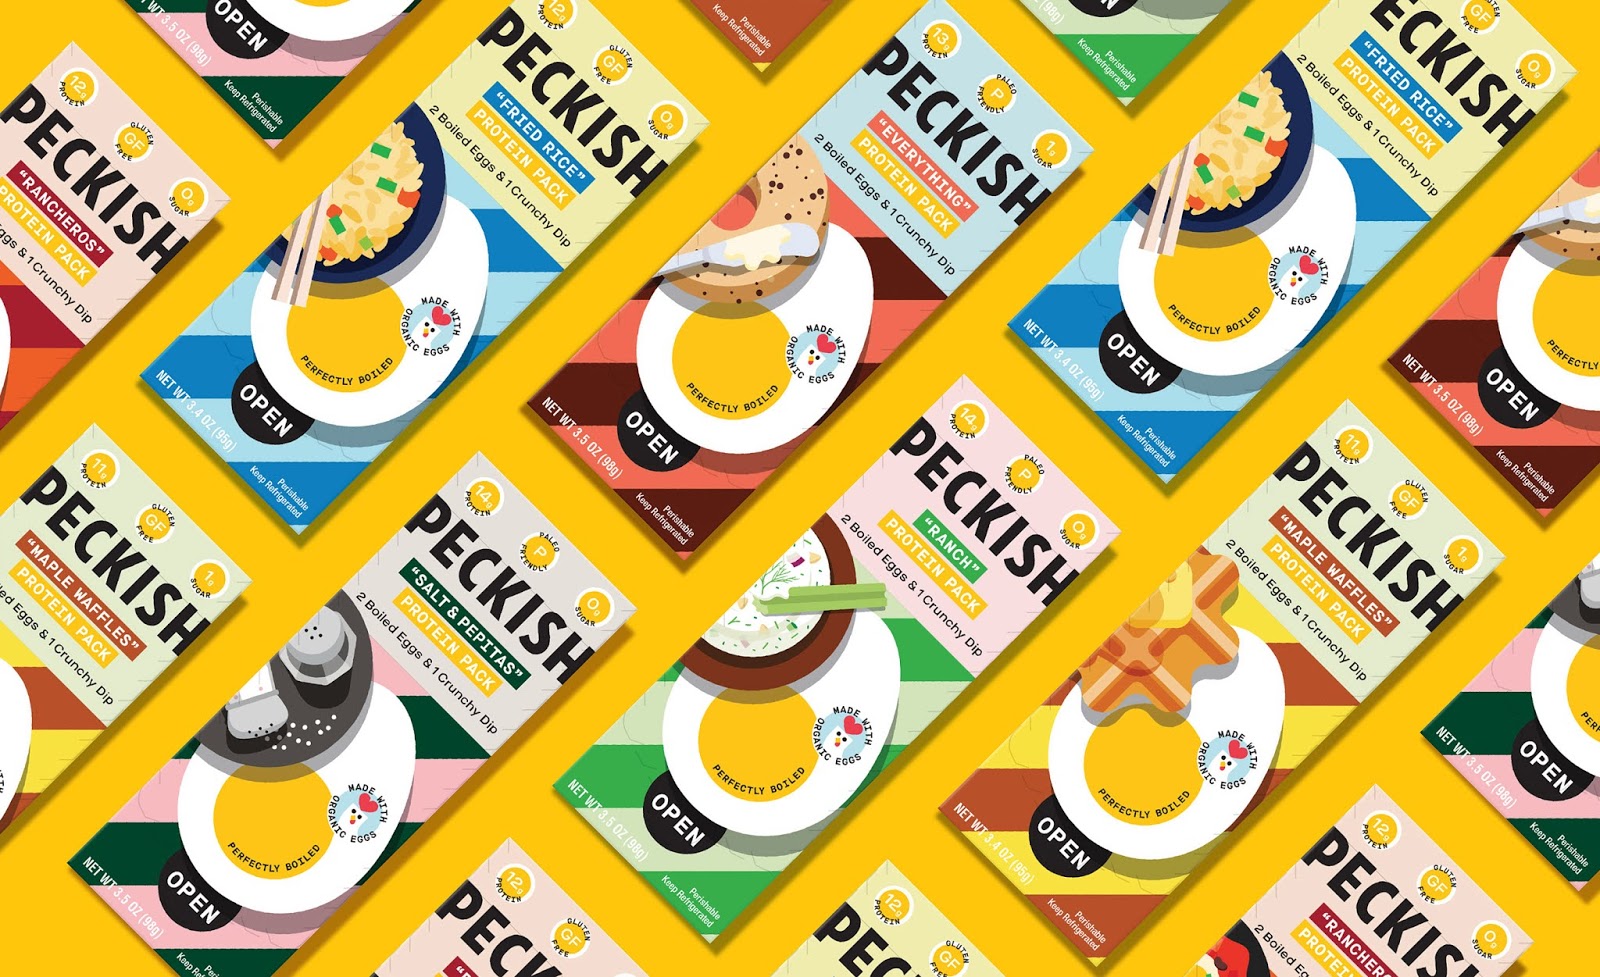 熟鸡蛋+蘸酱！即食便携式鸡蛋品牌Peckish包装设计